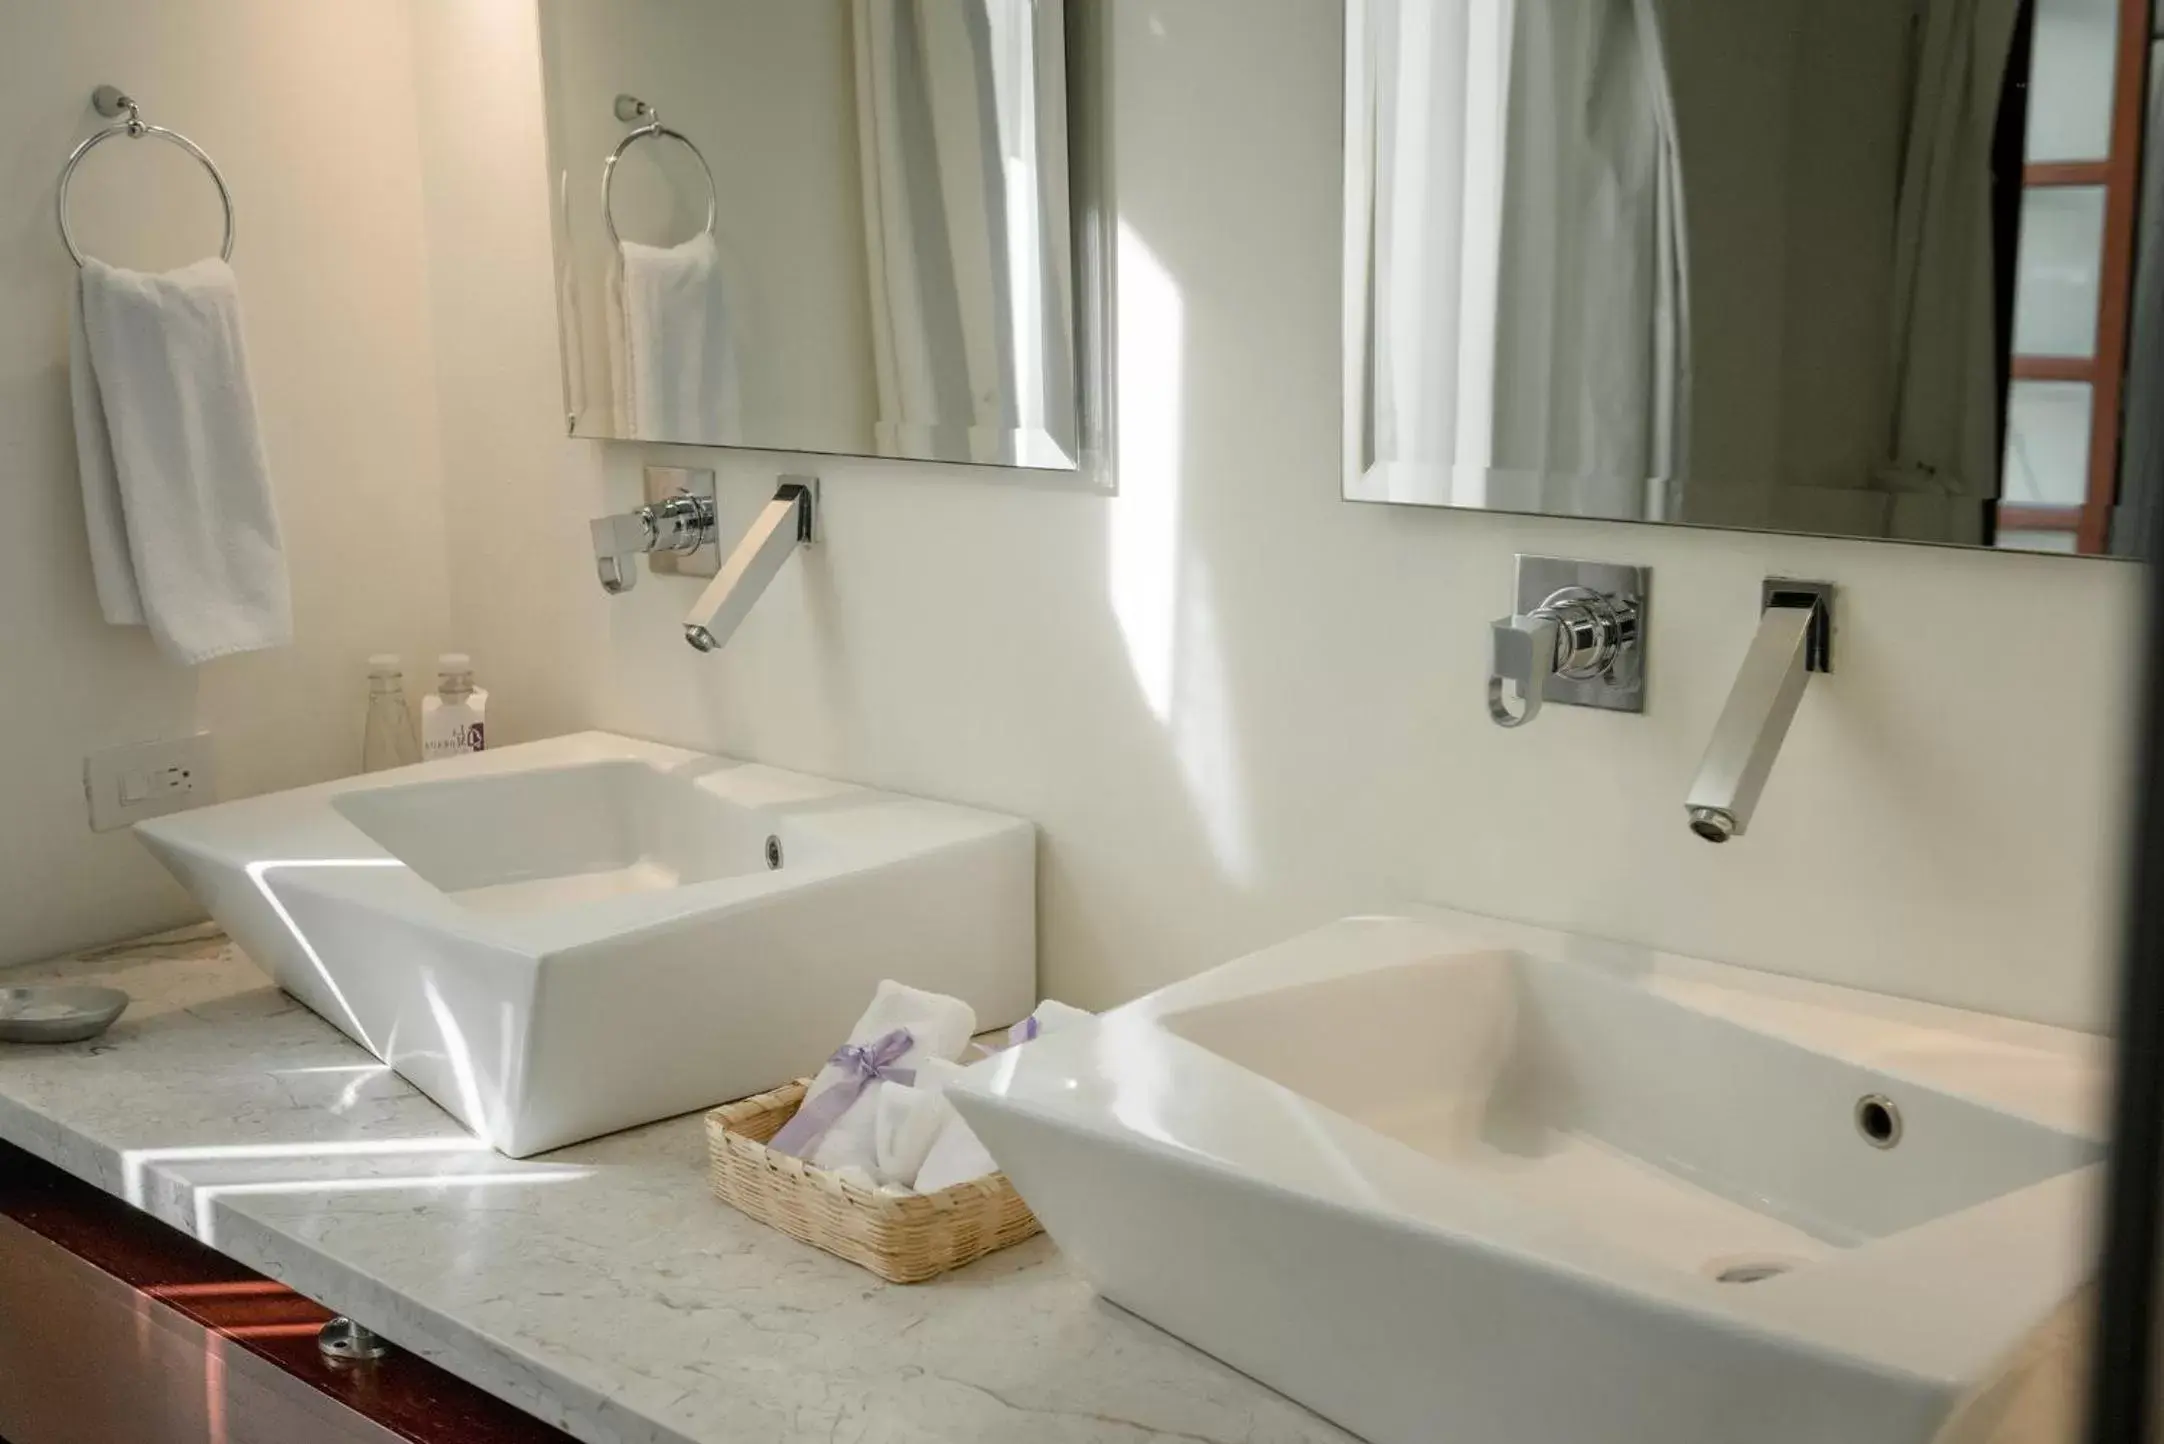 Bedroom, Bathroom in Hotel La Morada